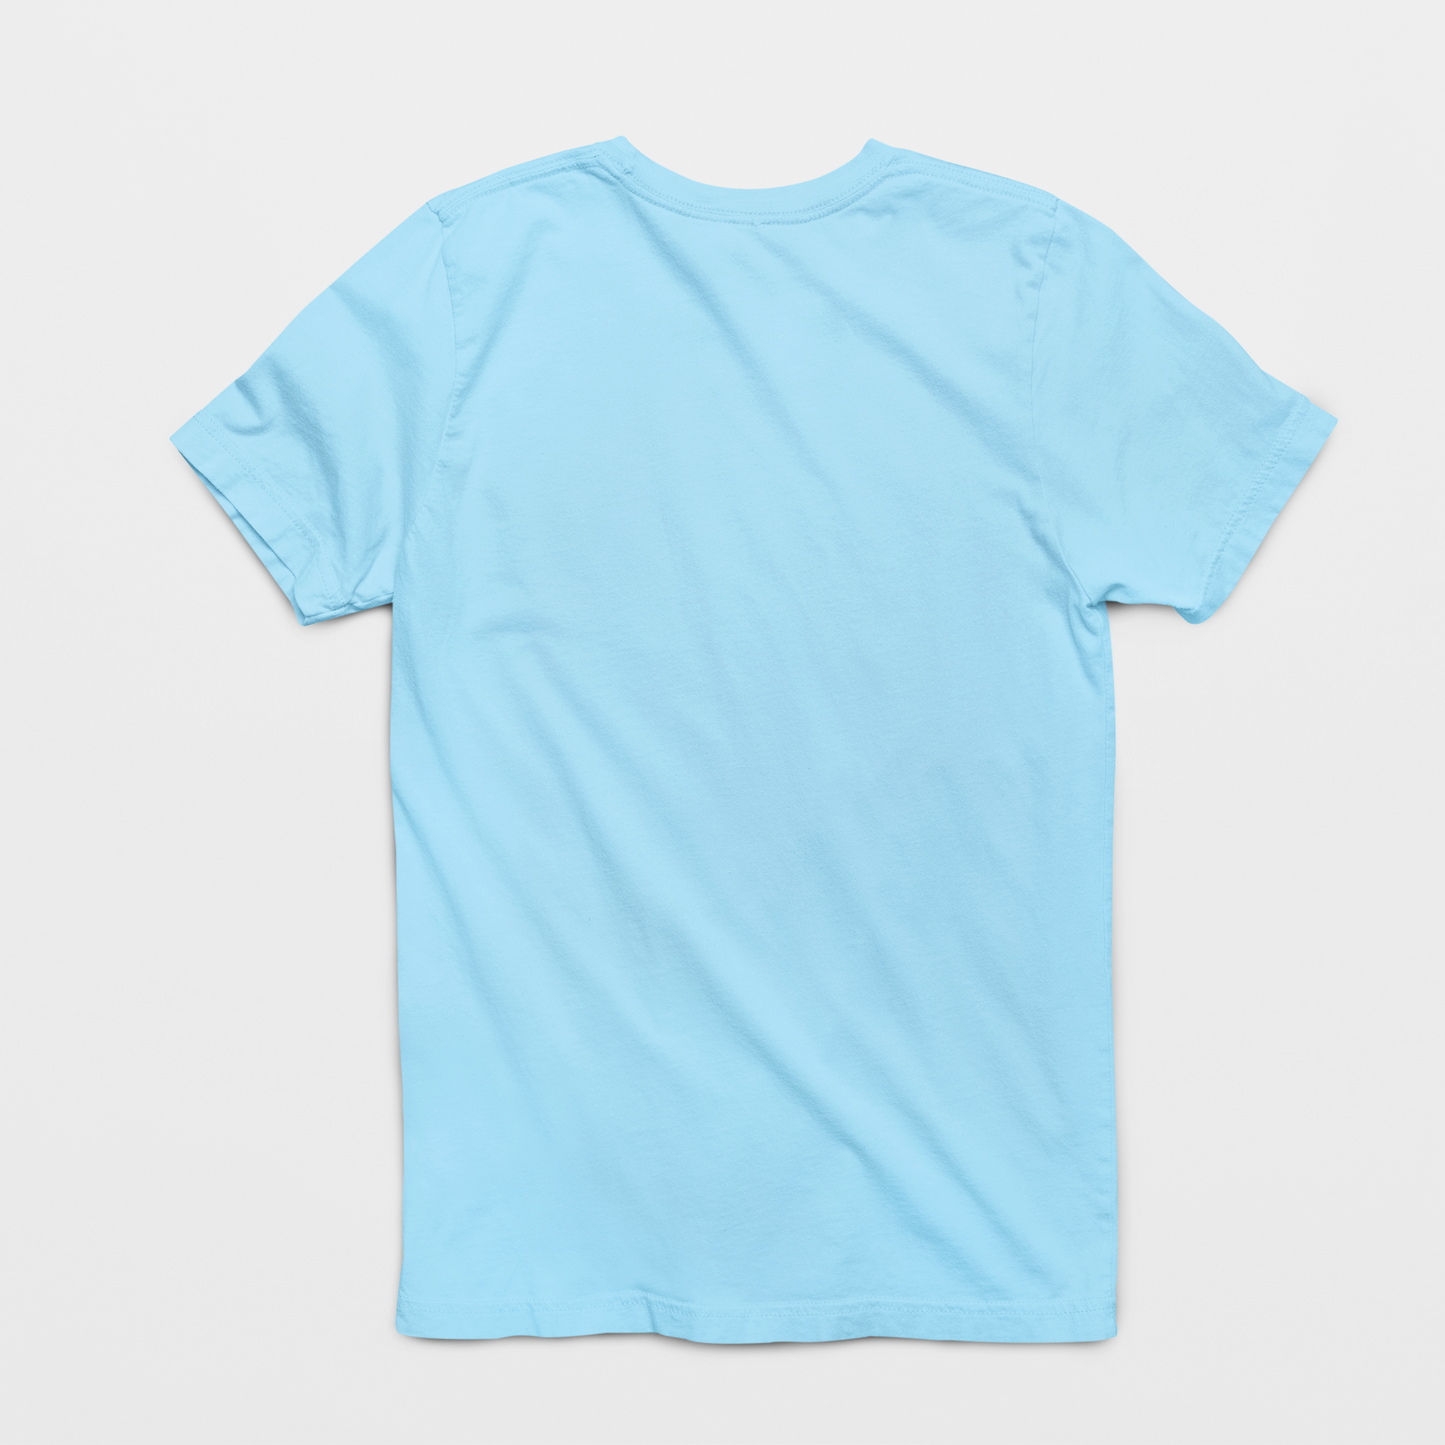 Balanced Diet Round Neck Cotton T-Shirt - Blue